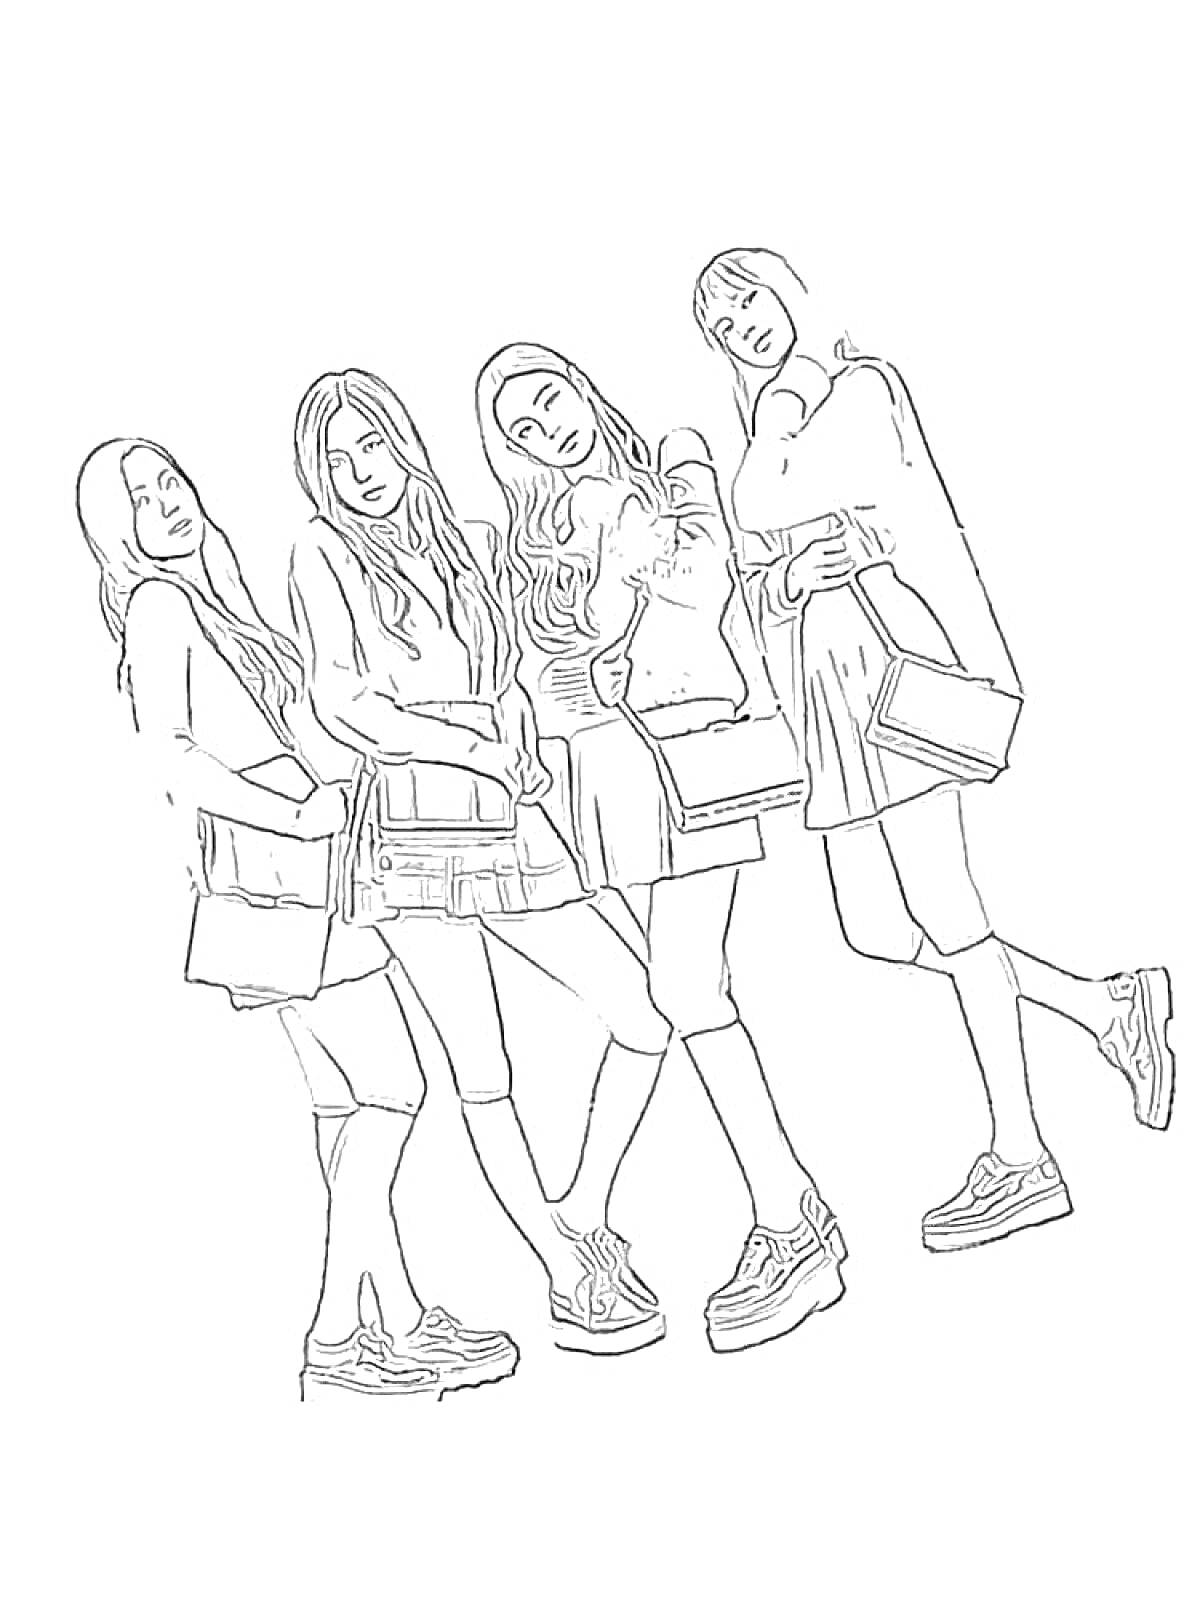 Четыре девушки в стиле Blackpink с сумками и кроссовками